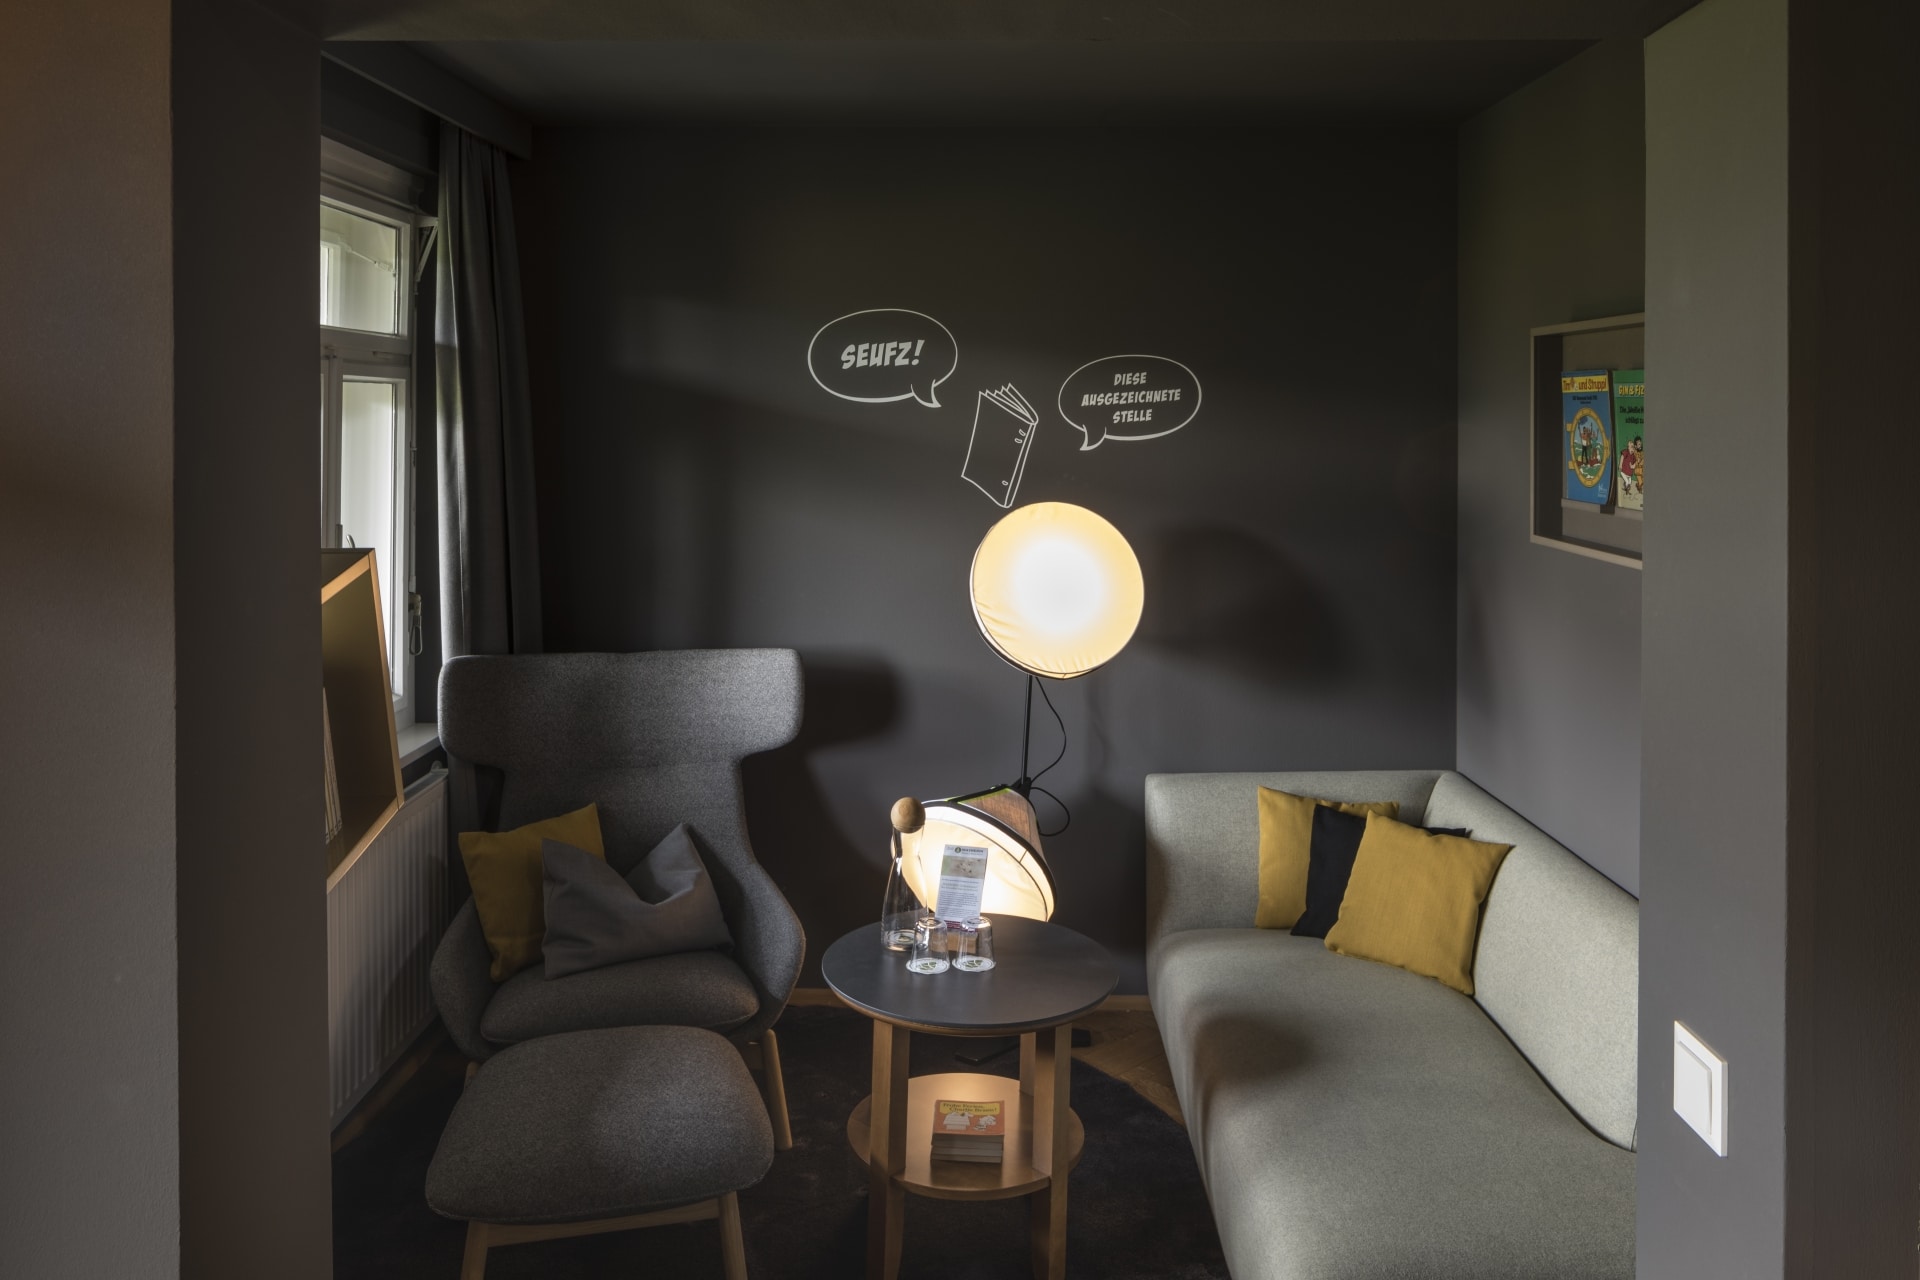 Wohnzimmer in grauen Farben und Softboxen als Stehlampe in der Seufzer Suite